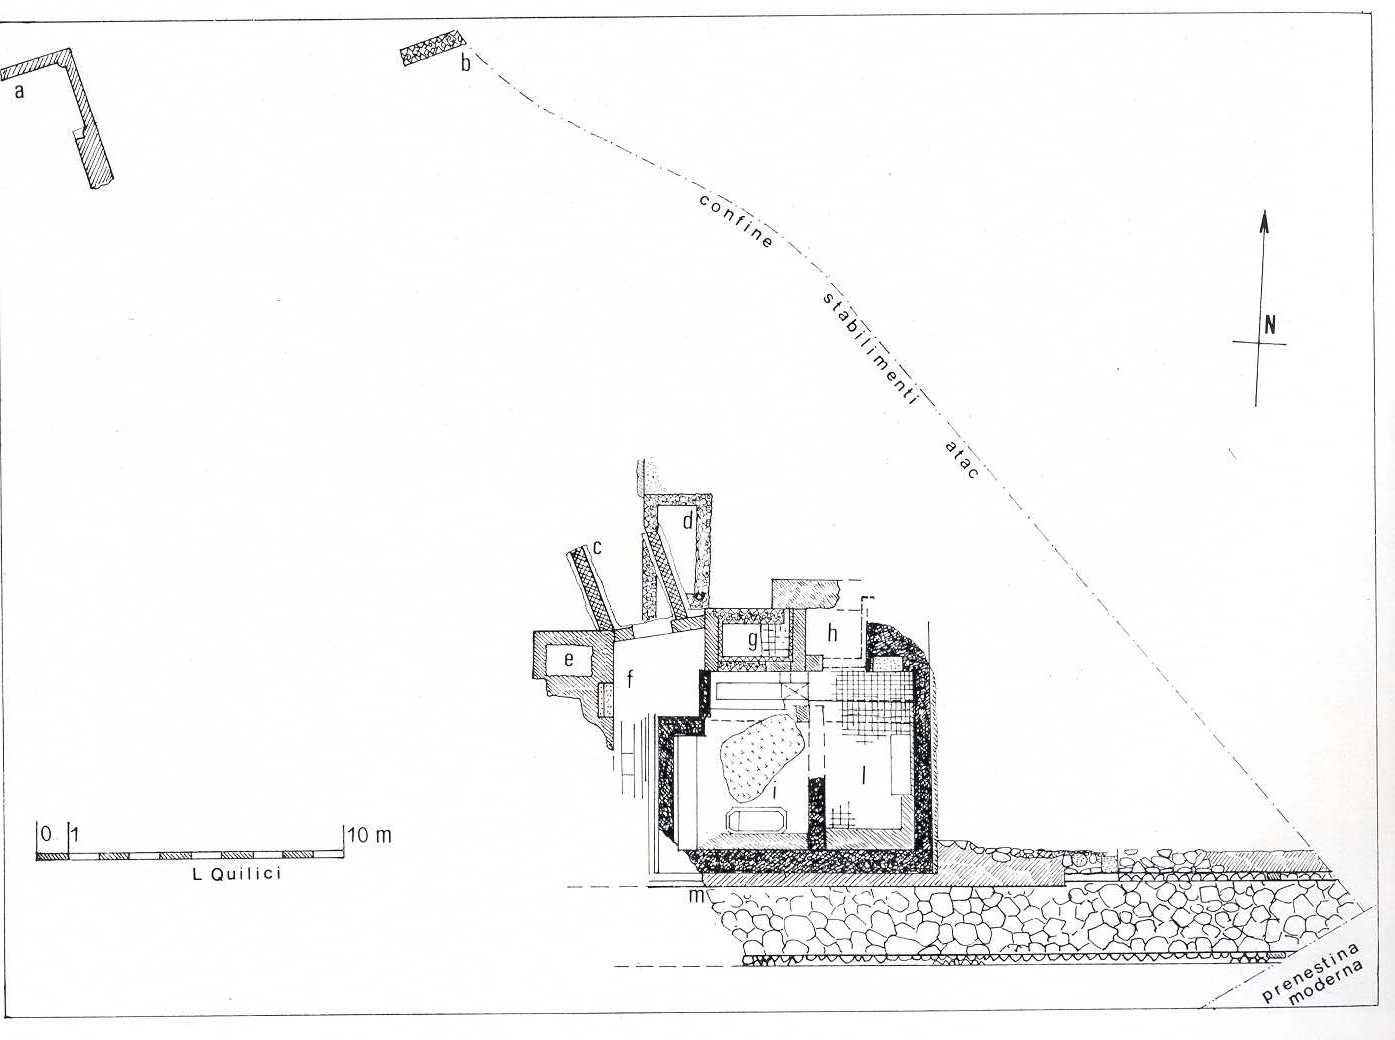 Planimetria del tratto basolato e del sepolcro (Quilici 1974, p.274, f.554)